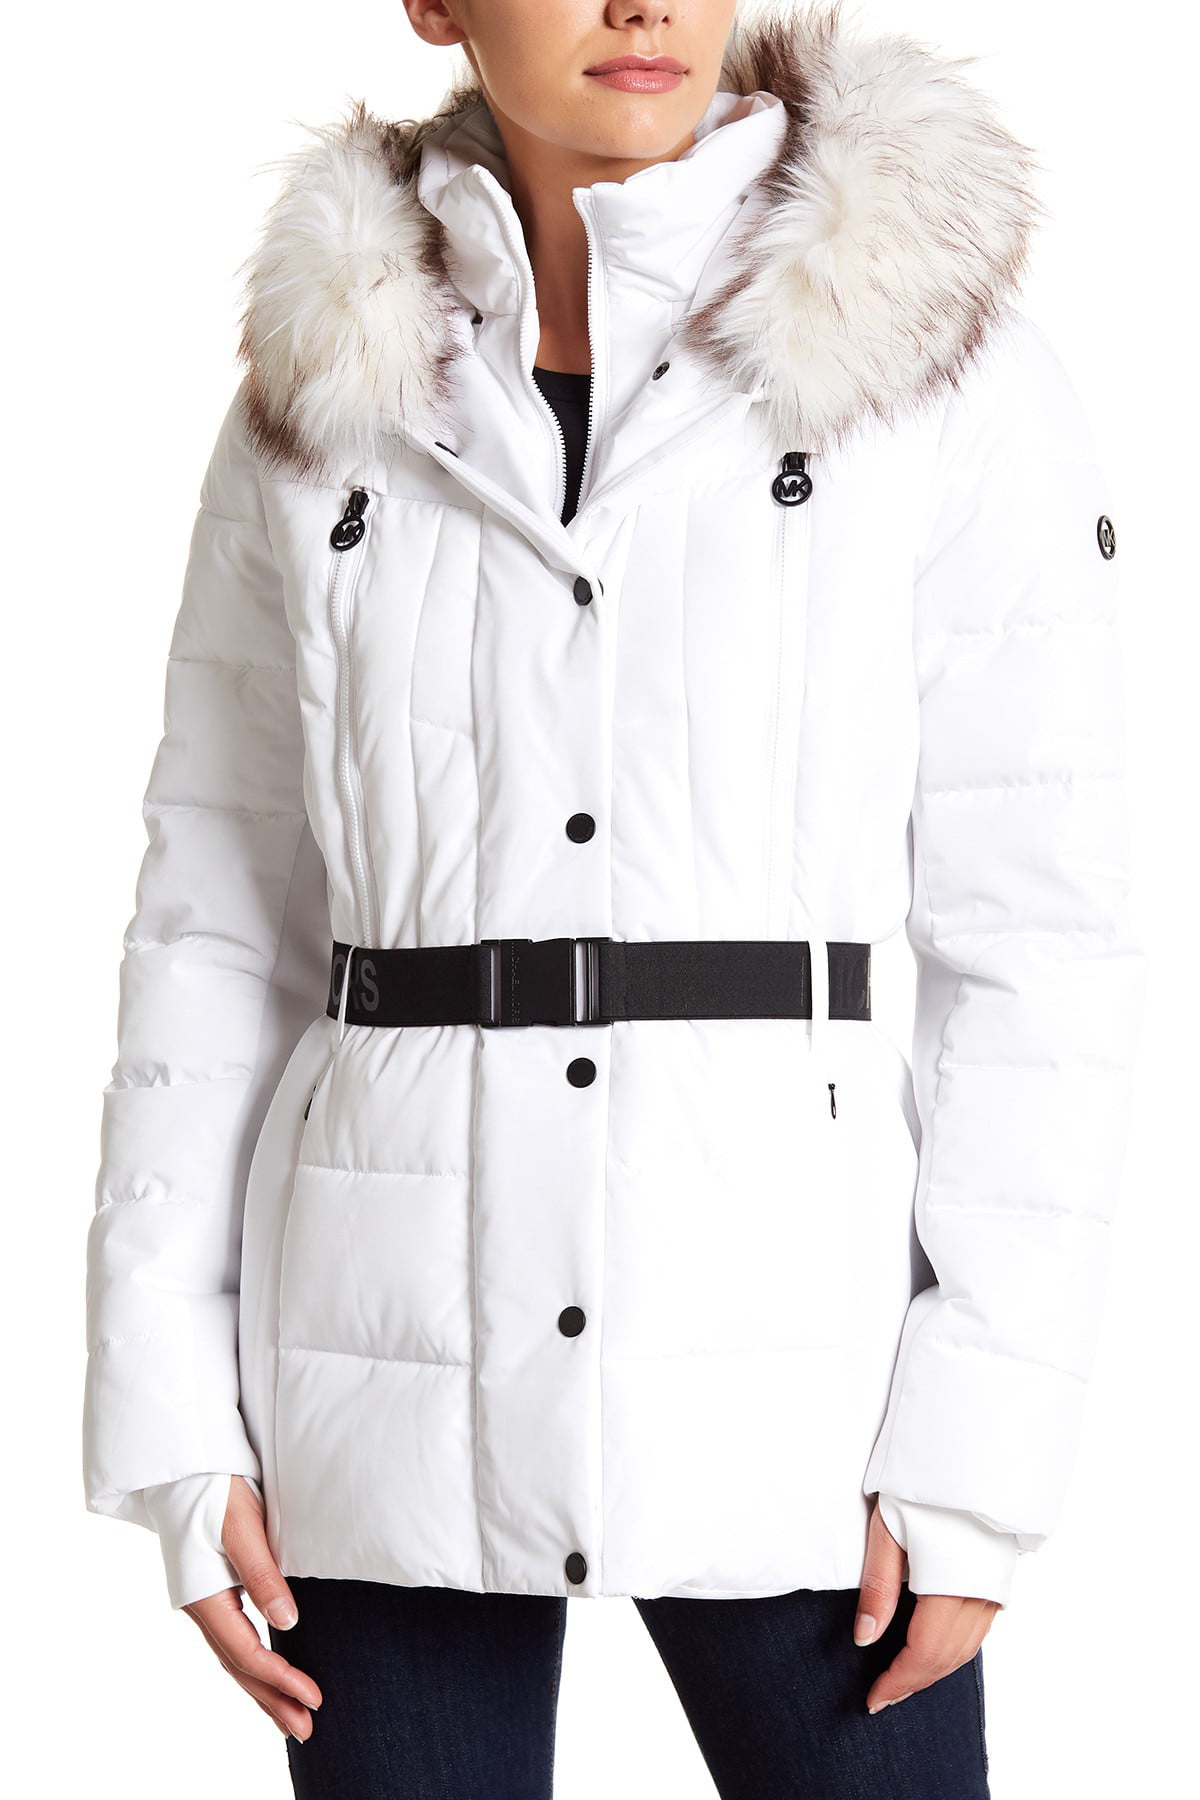 michael kors white coat